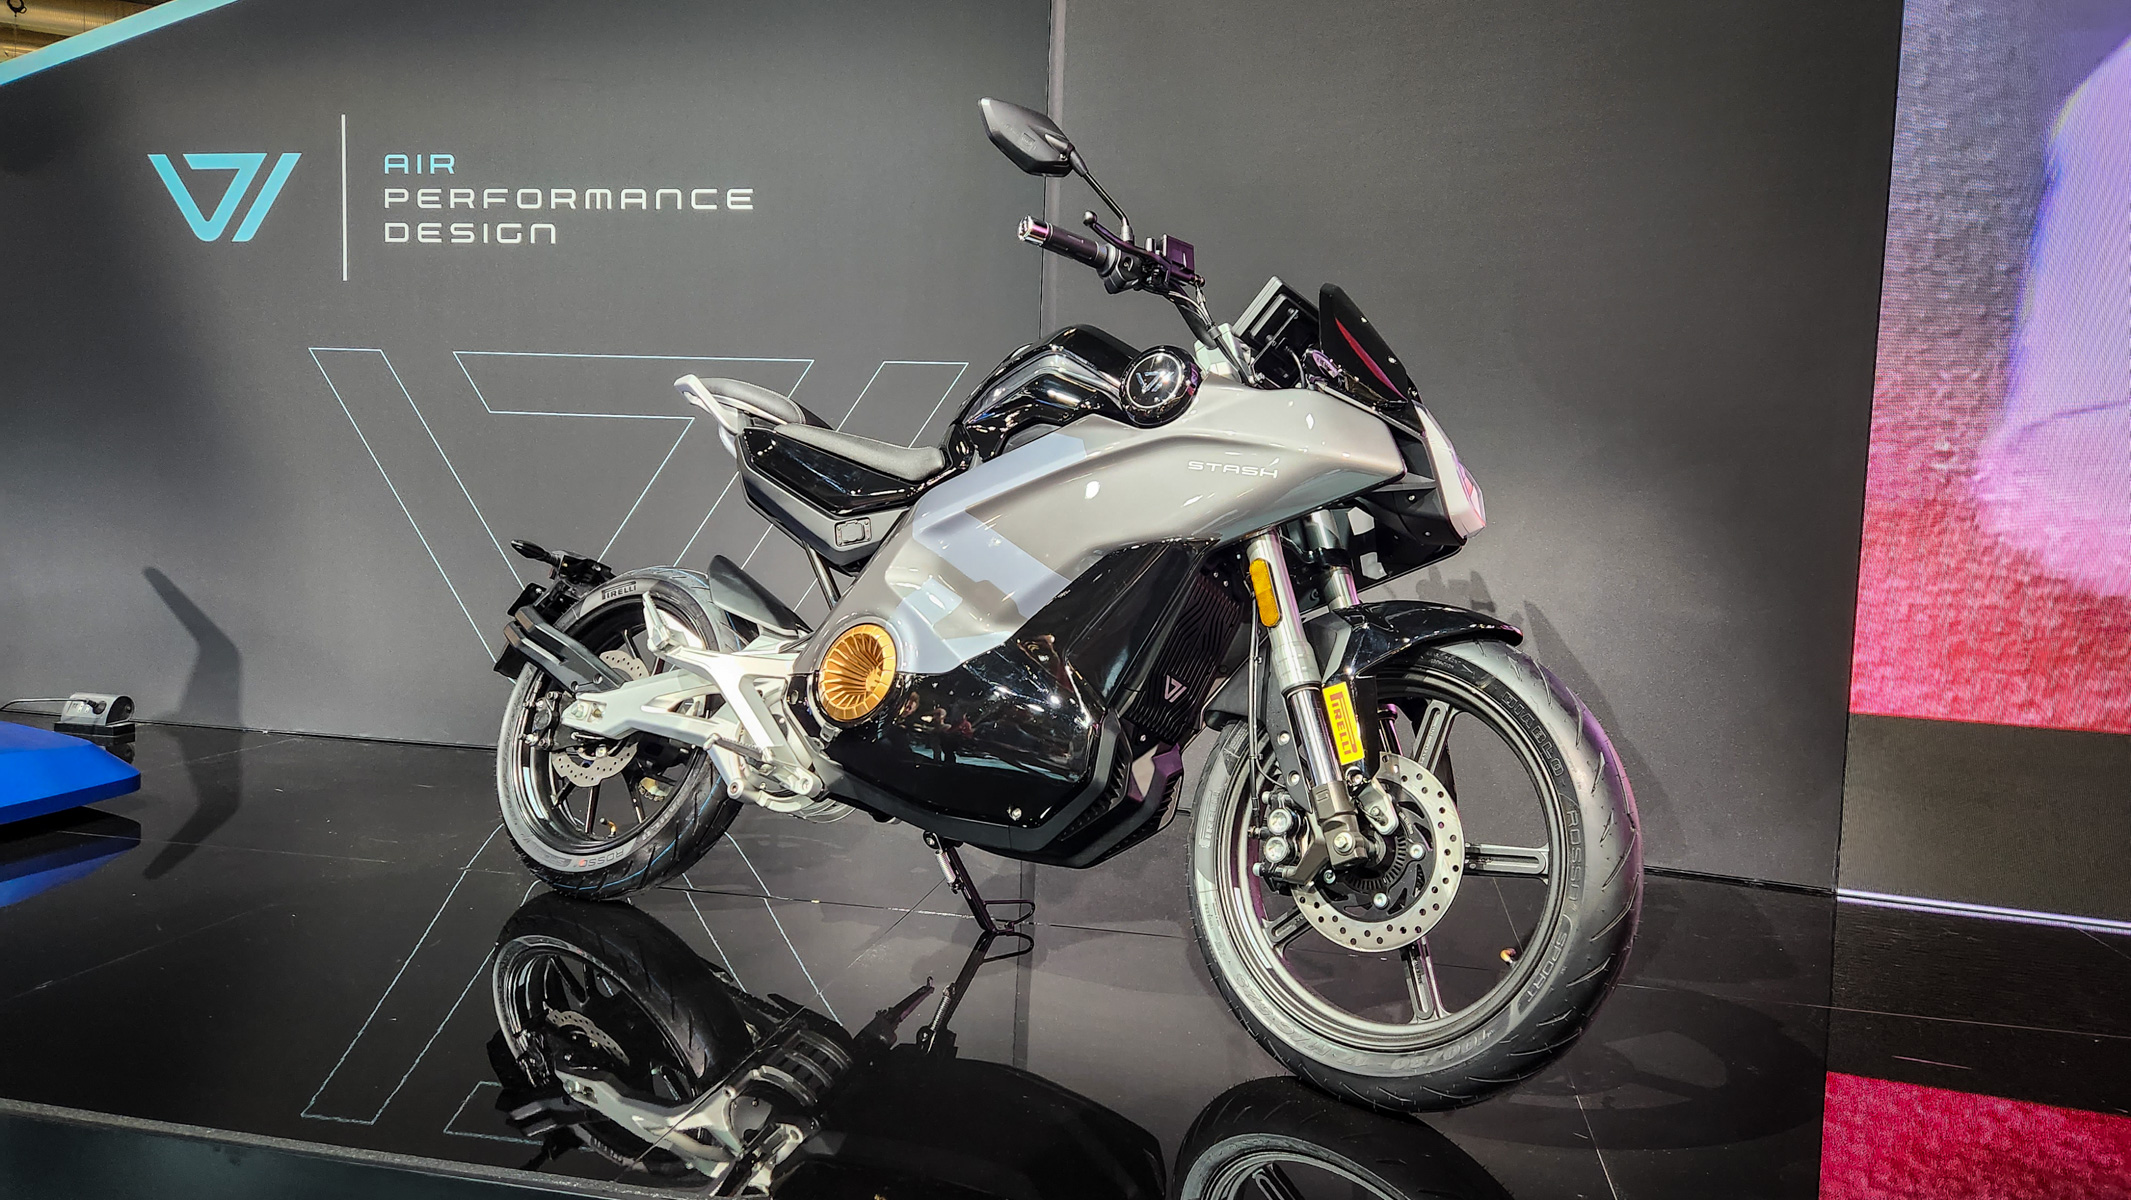 Motocykl elektryczny: skrytka Vmoto ostatecznie mocniejsza i szybsza niż oczekiwano